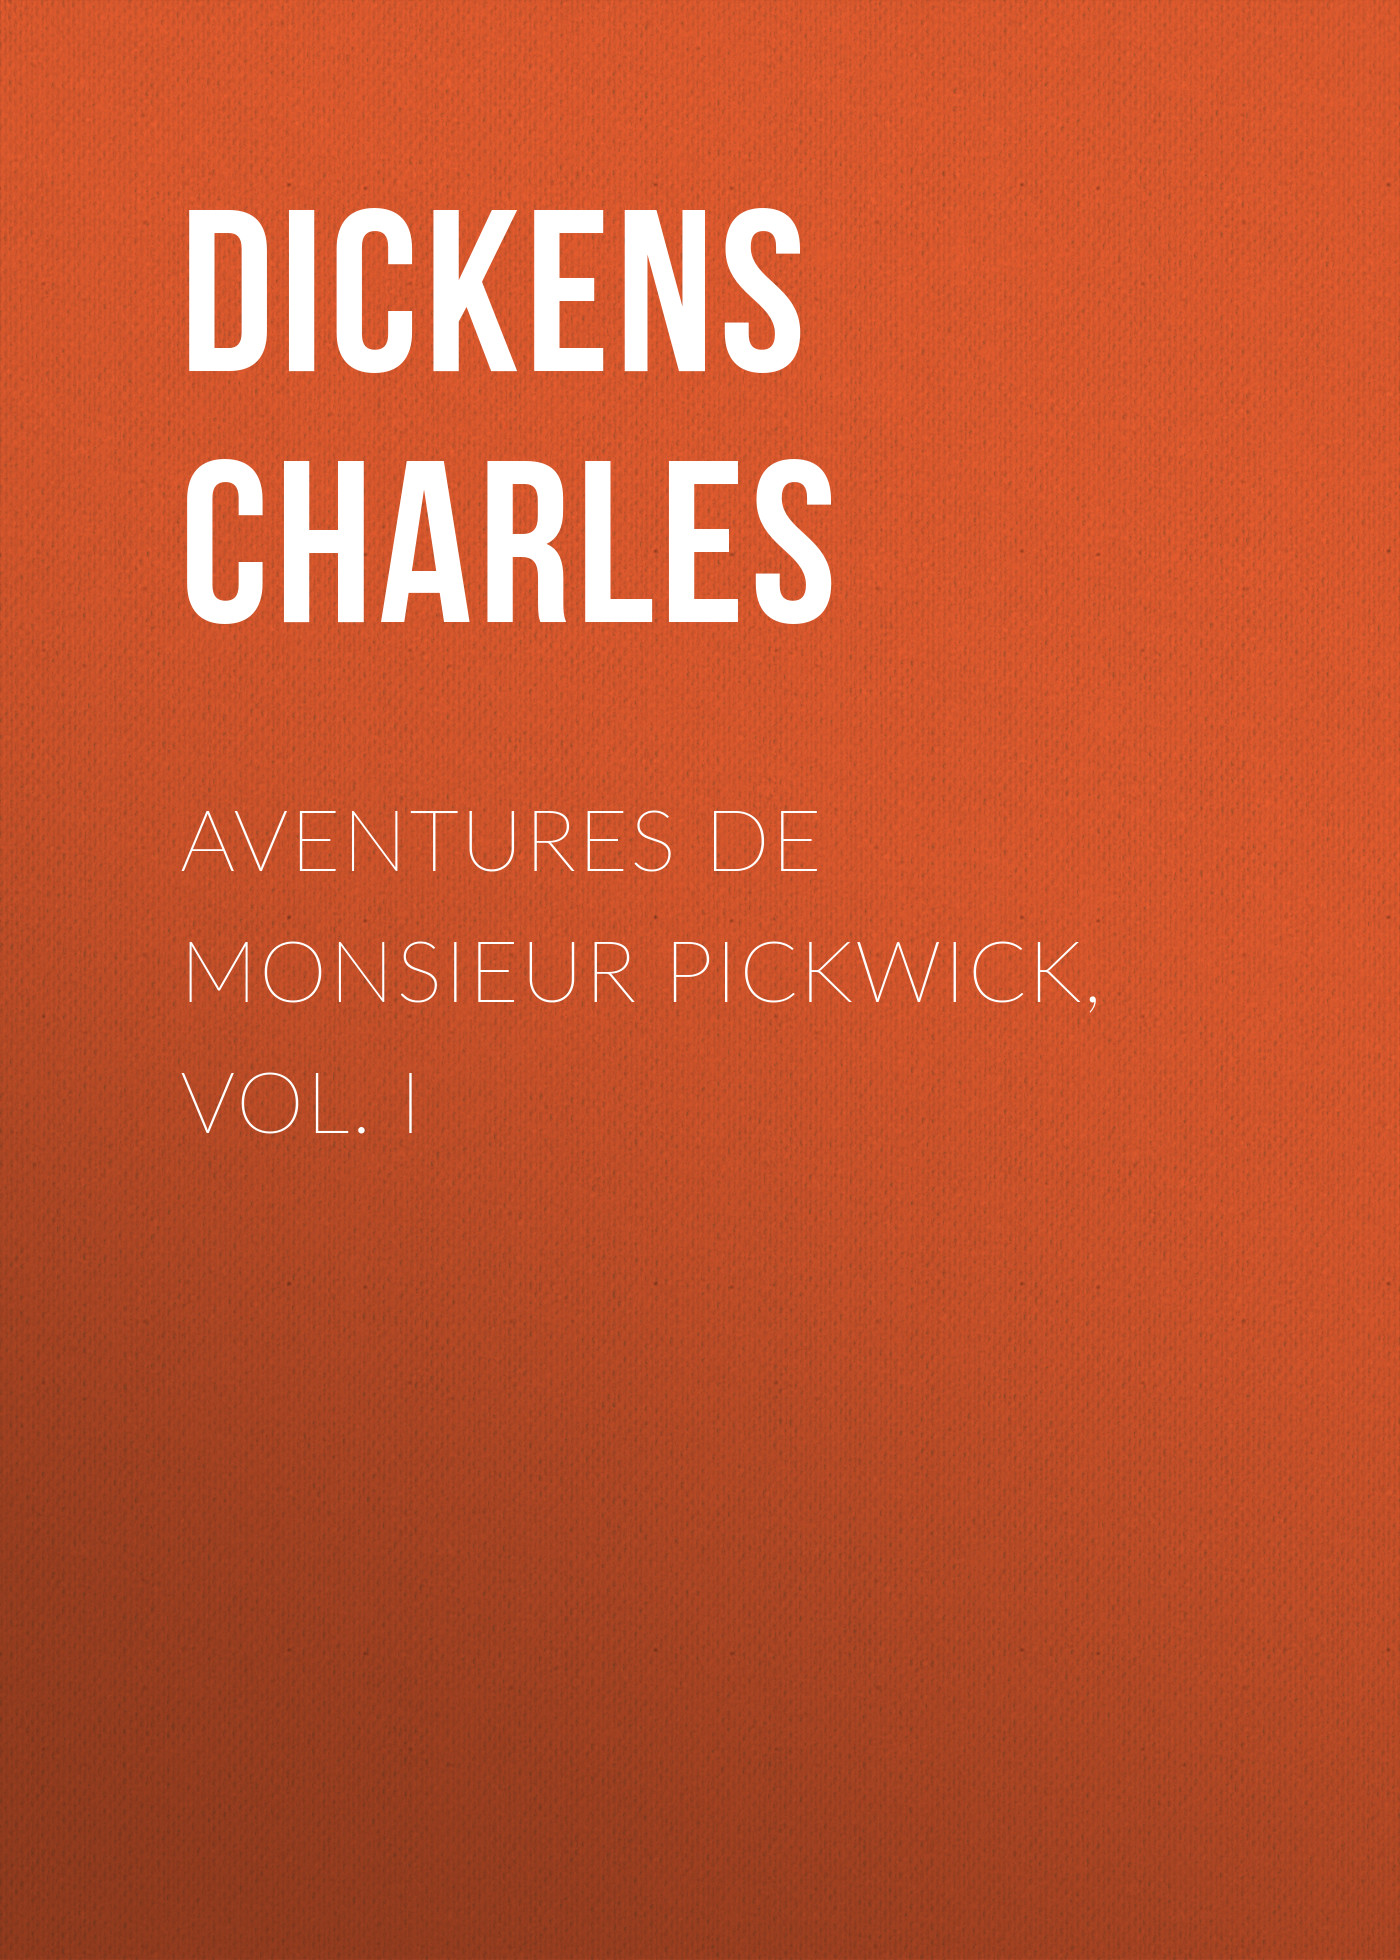 Книга Aventures de Monsieur Pickwick, Vol. I из серии , созданная Чарльз Диккенс, может относится к жанру Зарубежная старинная литература, Зарубежная классика. Стоимость электронной книги Aventures de Monsieur Pickwick, Vol. I с идентификатором 25092068 составляет 0 руб.